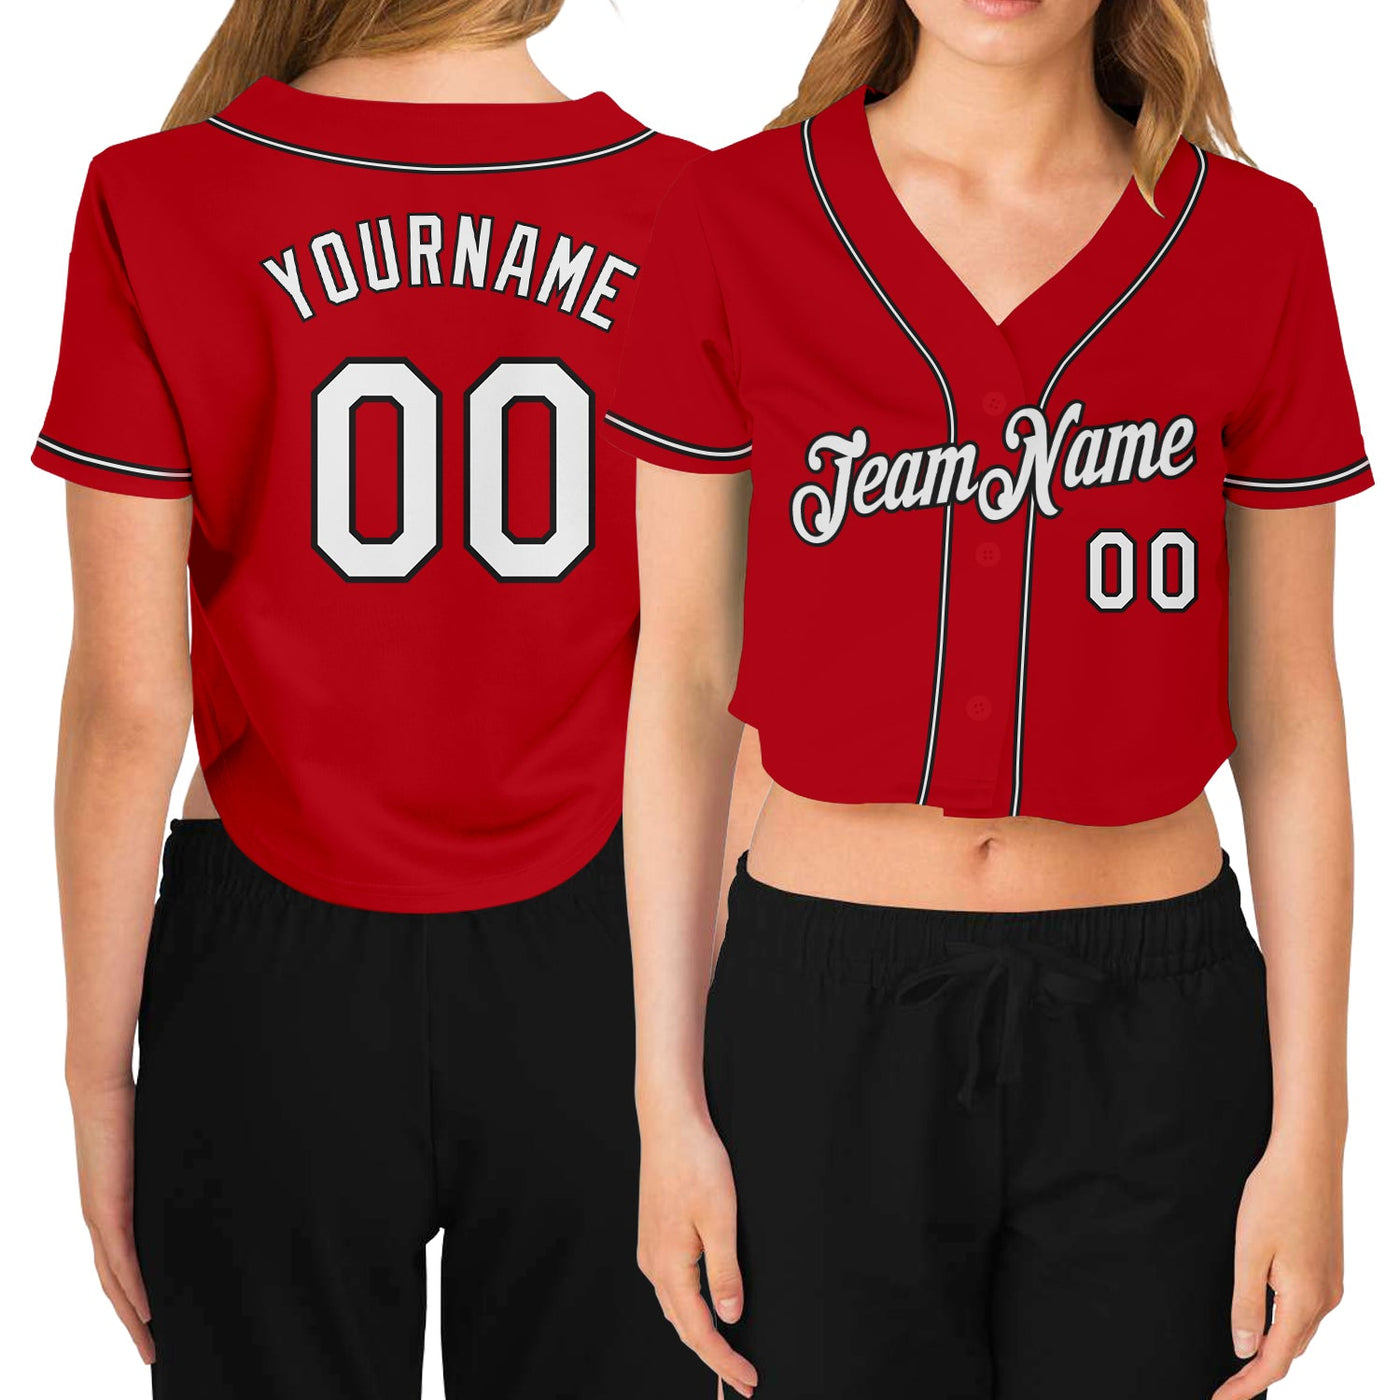 Custom Women's Red White-Black V-Neck Cropped Baseball Jersey - Owls Matrix LTD